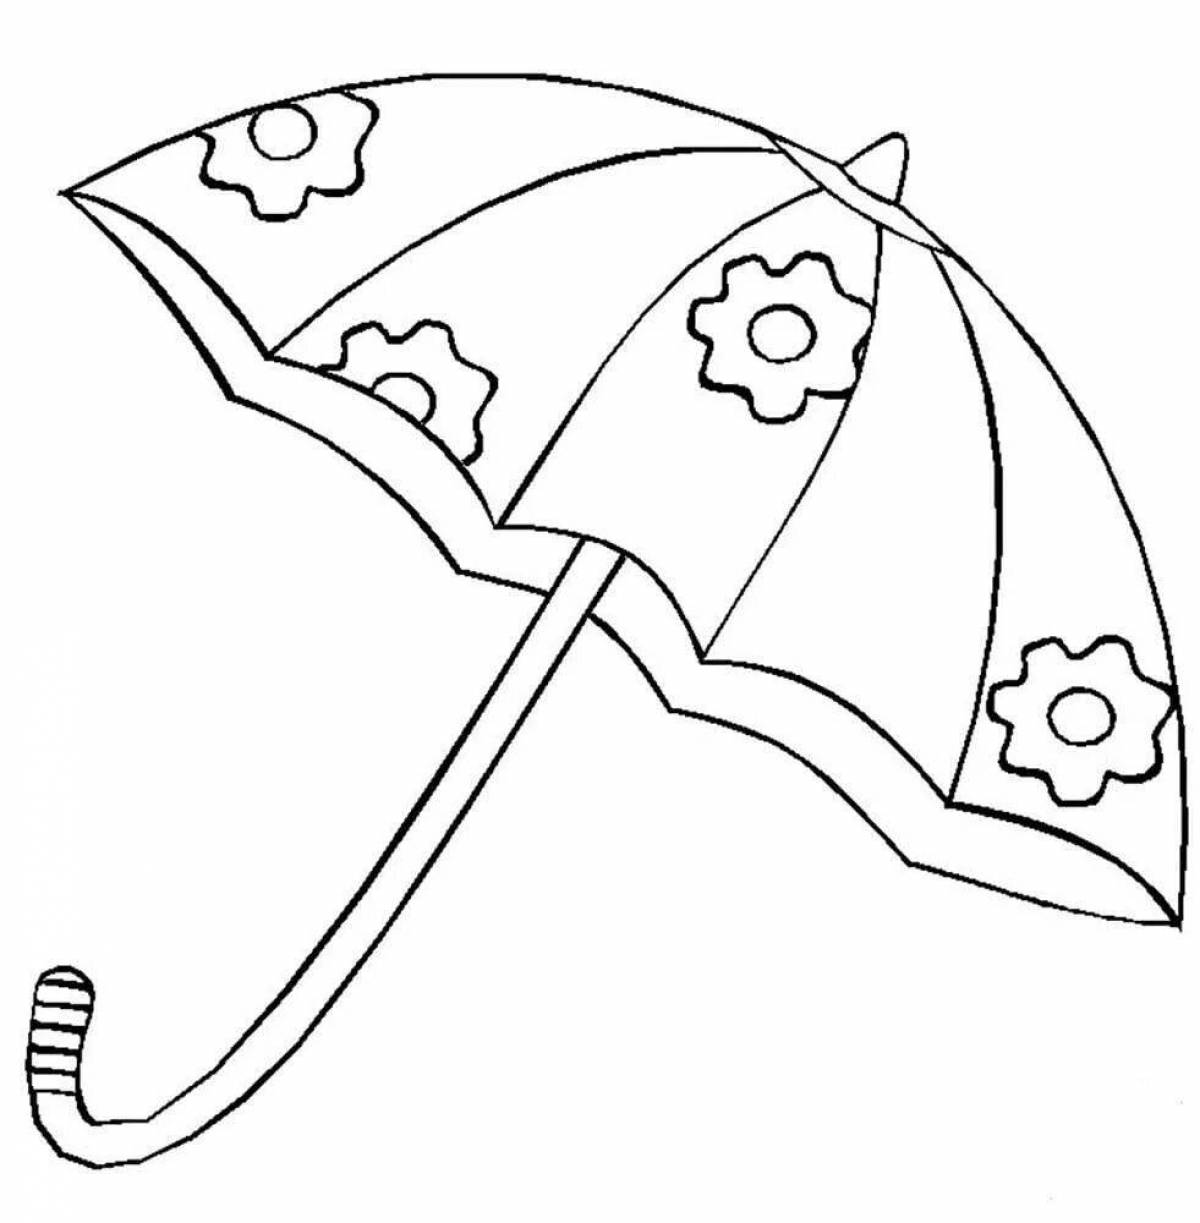 Красочная раскраска зонтик для детей 3-4 лет